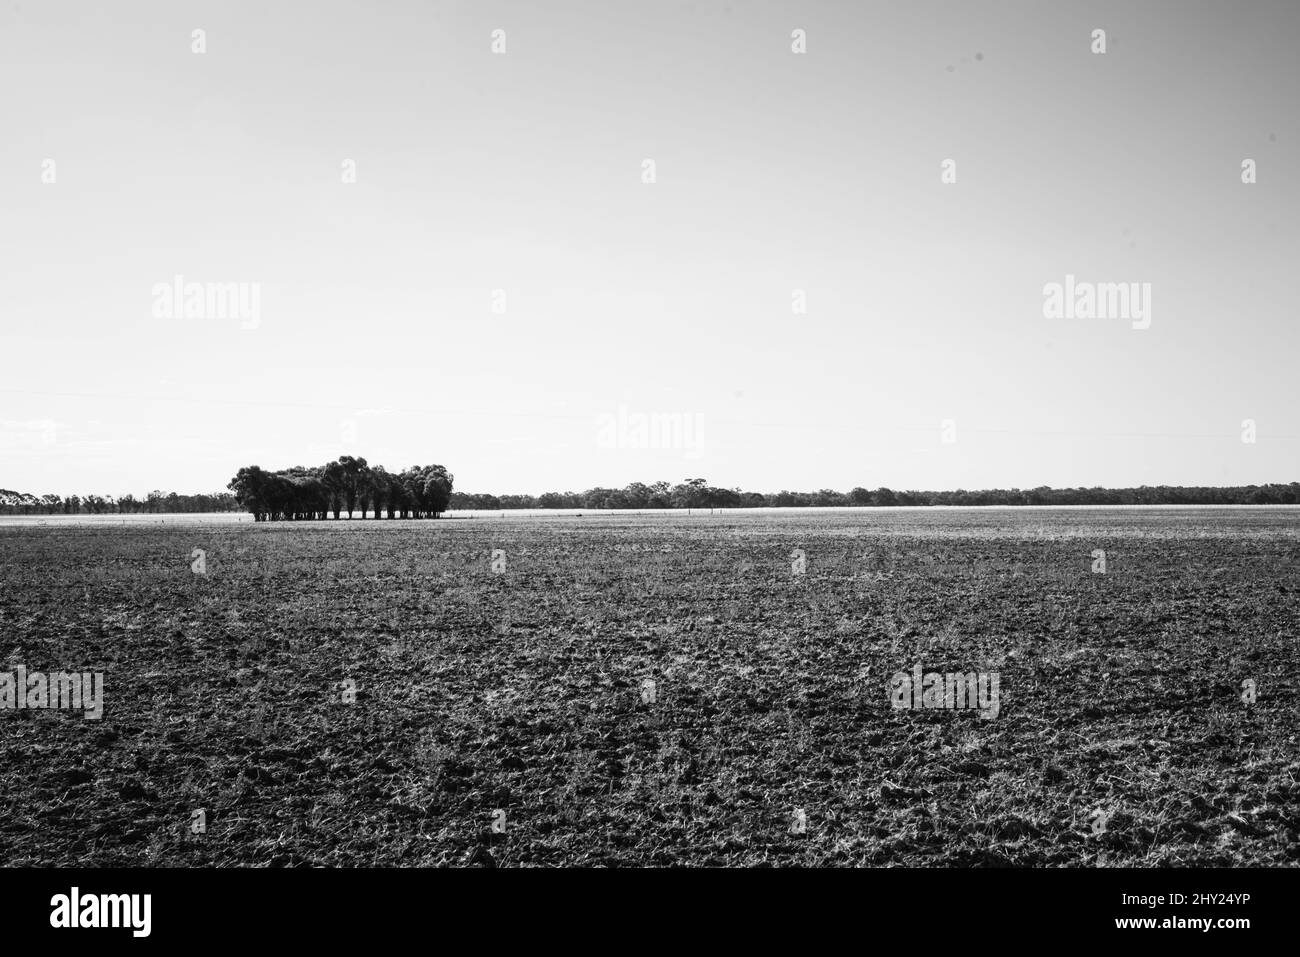 Échelle de gris d'une rangée d'arbres dans un champ en zone rurale Banque D'Images